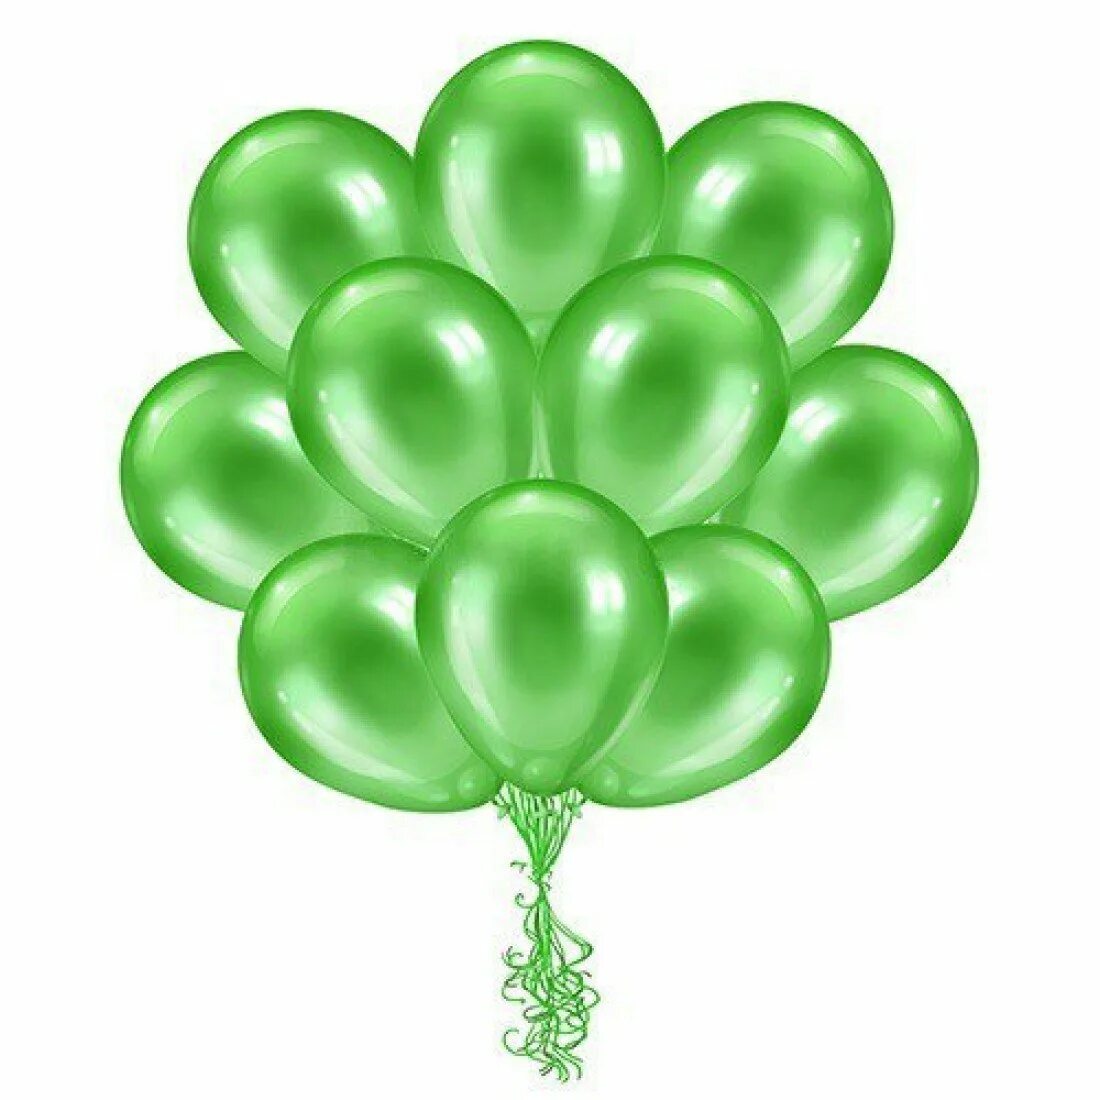 Надуваем зеленые воздушные шарики. Воздушные шары. Воздушный шарик. Зеленый шарик. Зеленый воздушный шарик.